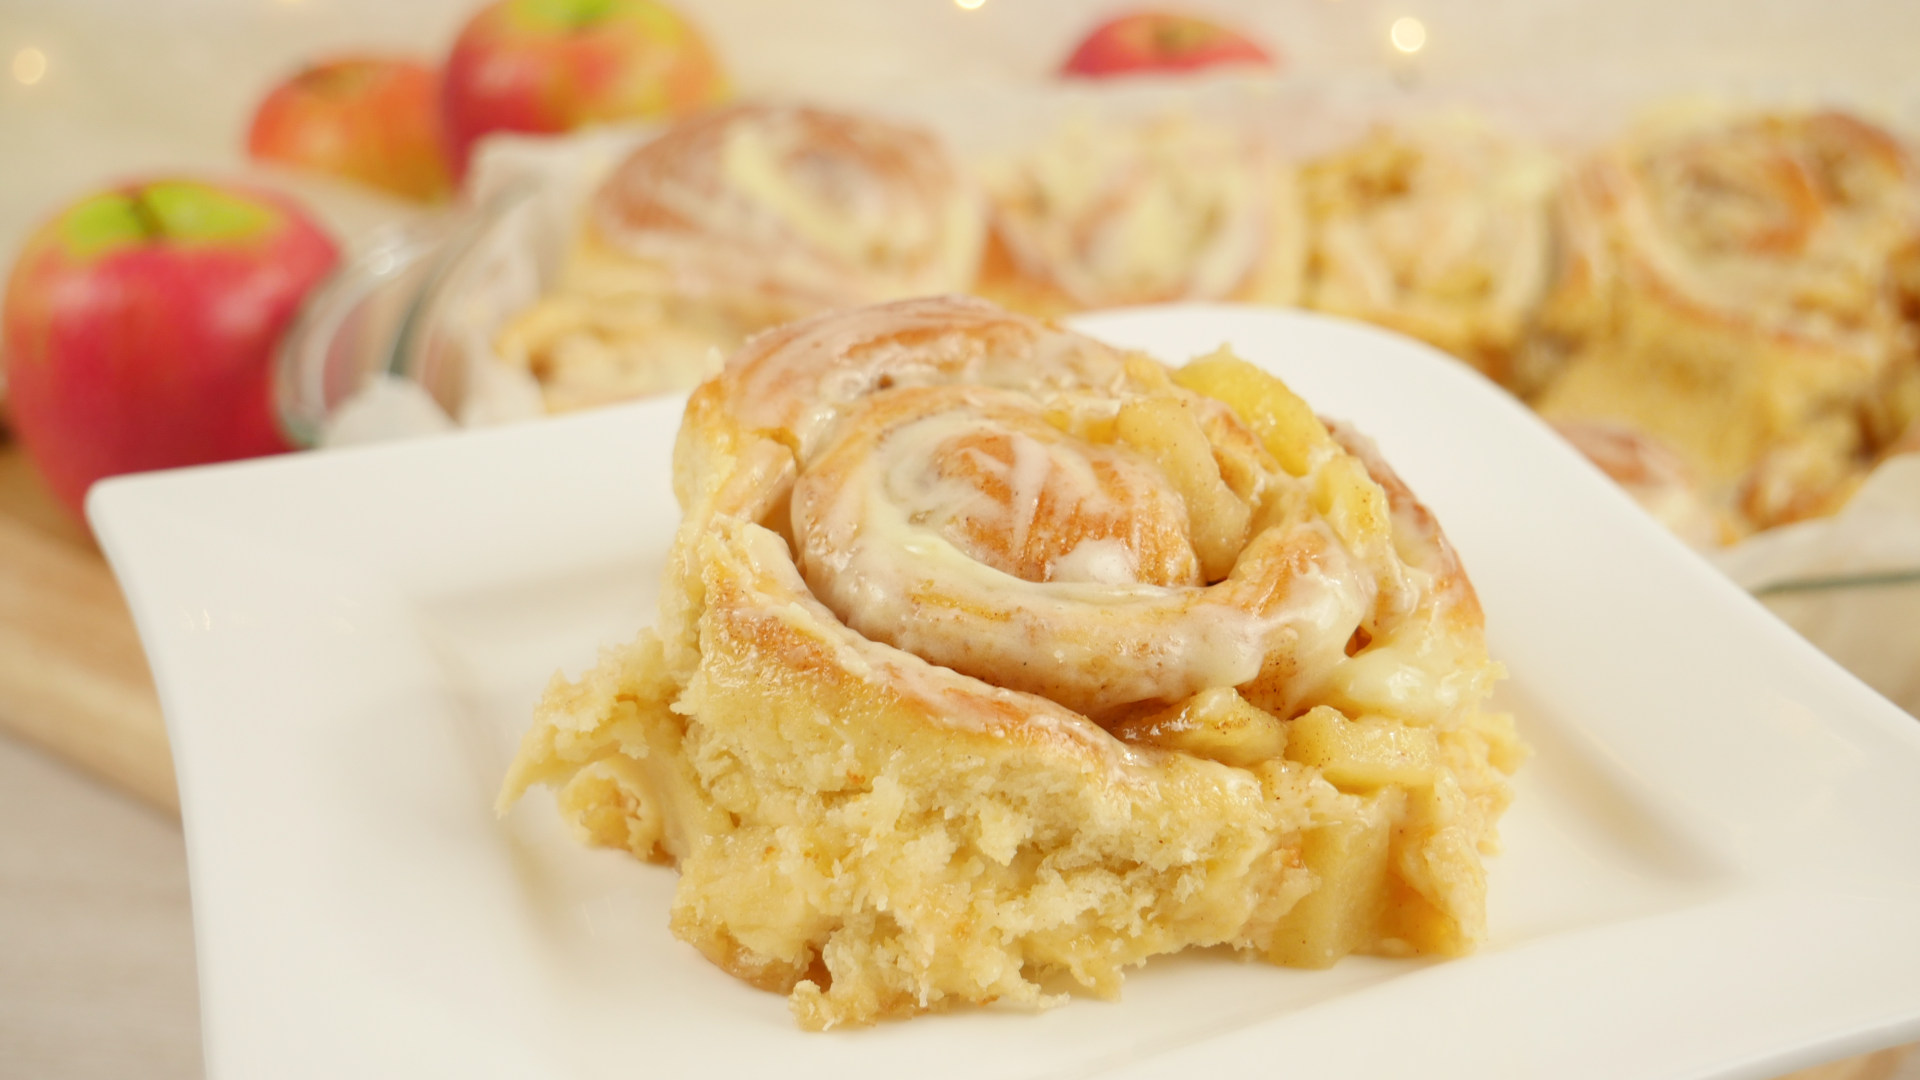 Apple Pie Cinnamon Rolls I Apfel Zimtschnecken Cinnabon Rolls Mit Apfelfüllung Amerikanisch